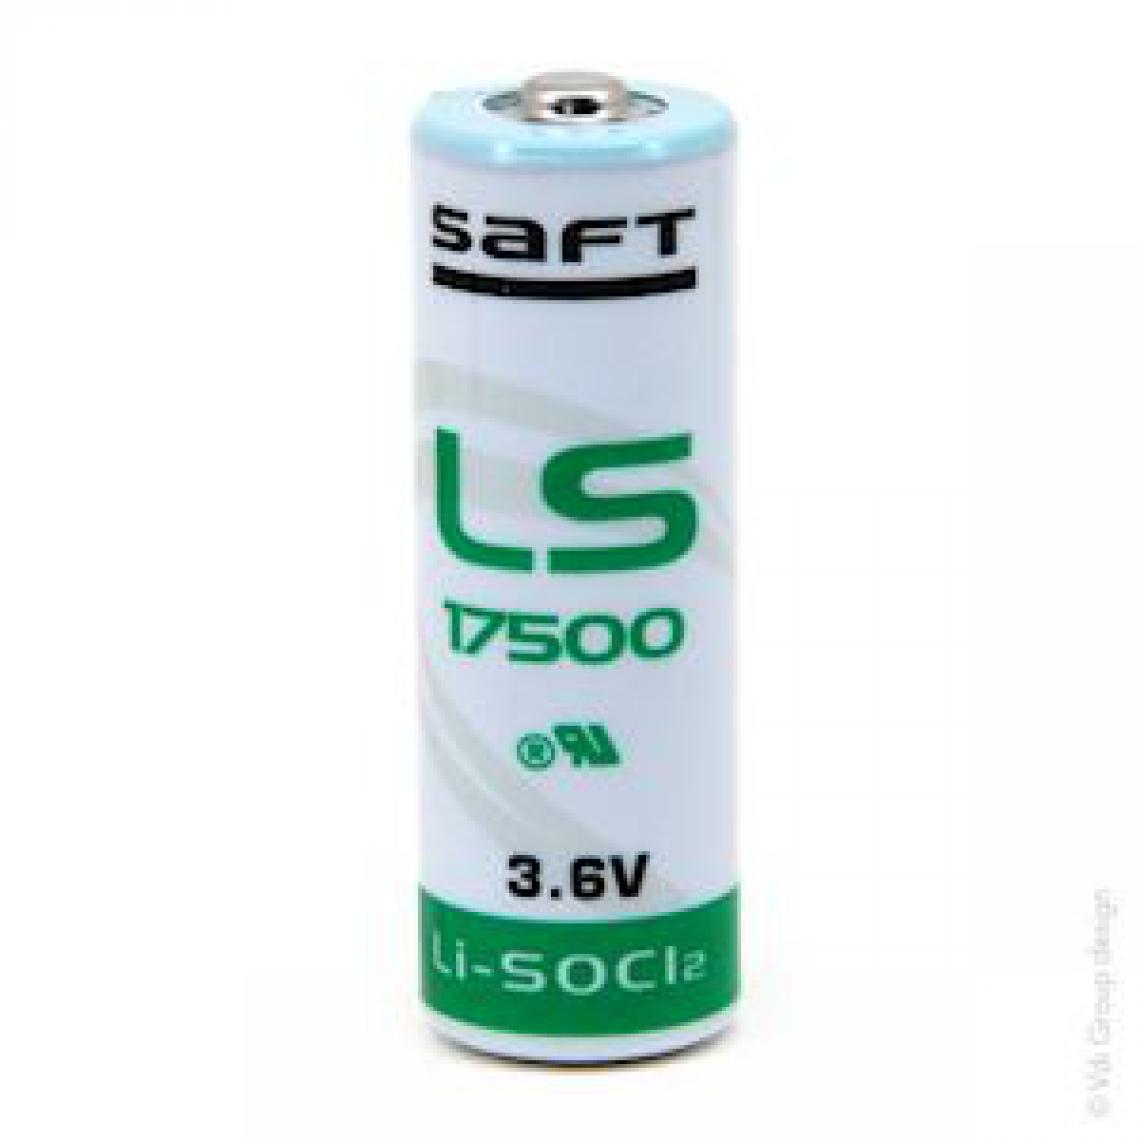 Enix Energie - pile lithium - ls17500 a - 3.6 volts - 3.6ah - enix energies pcl7423b - Piles rechargeables